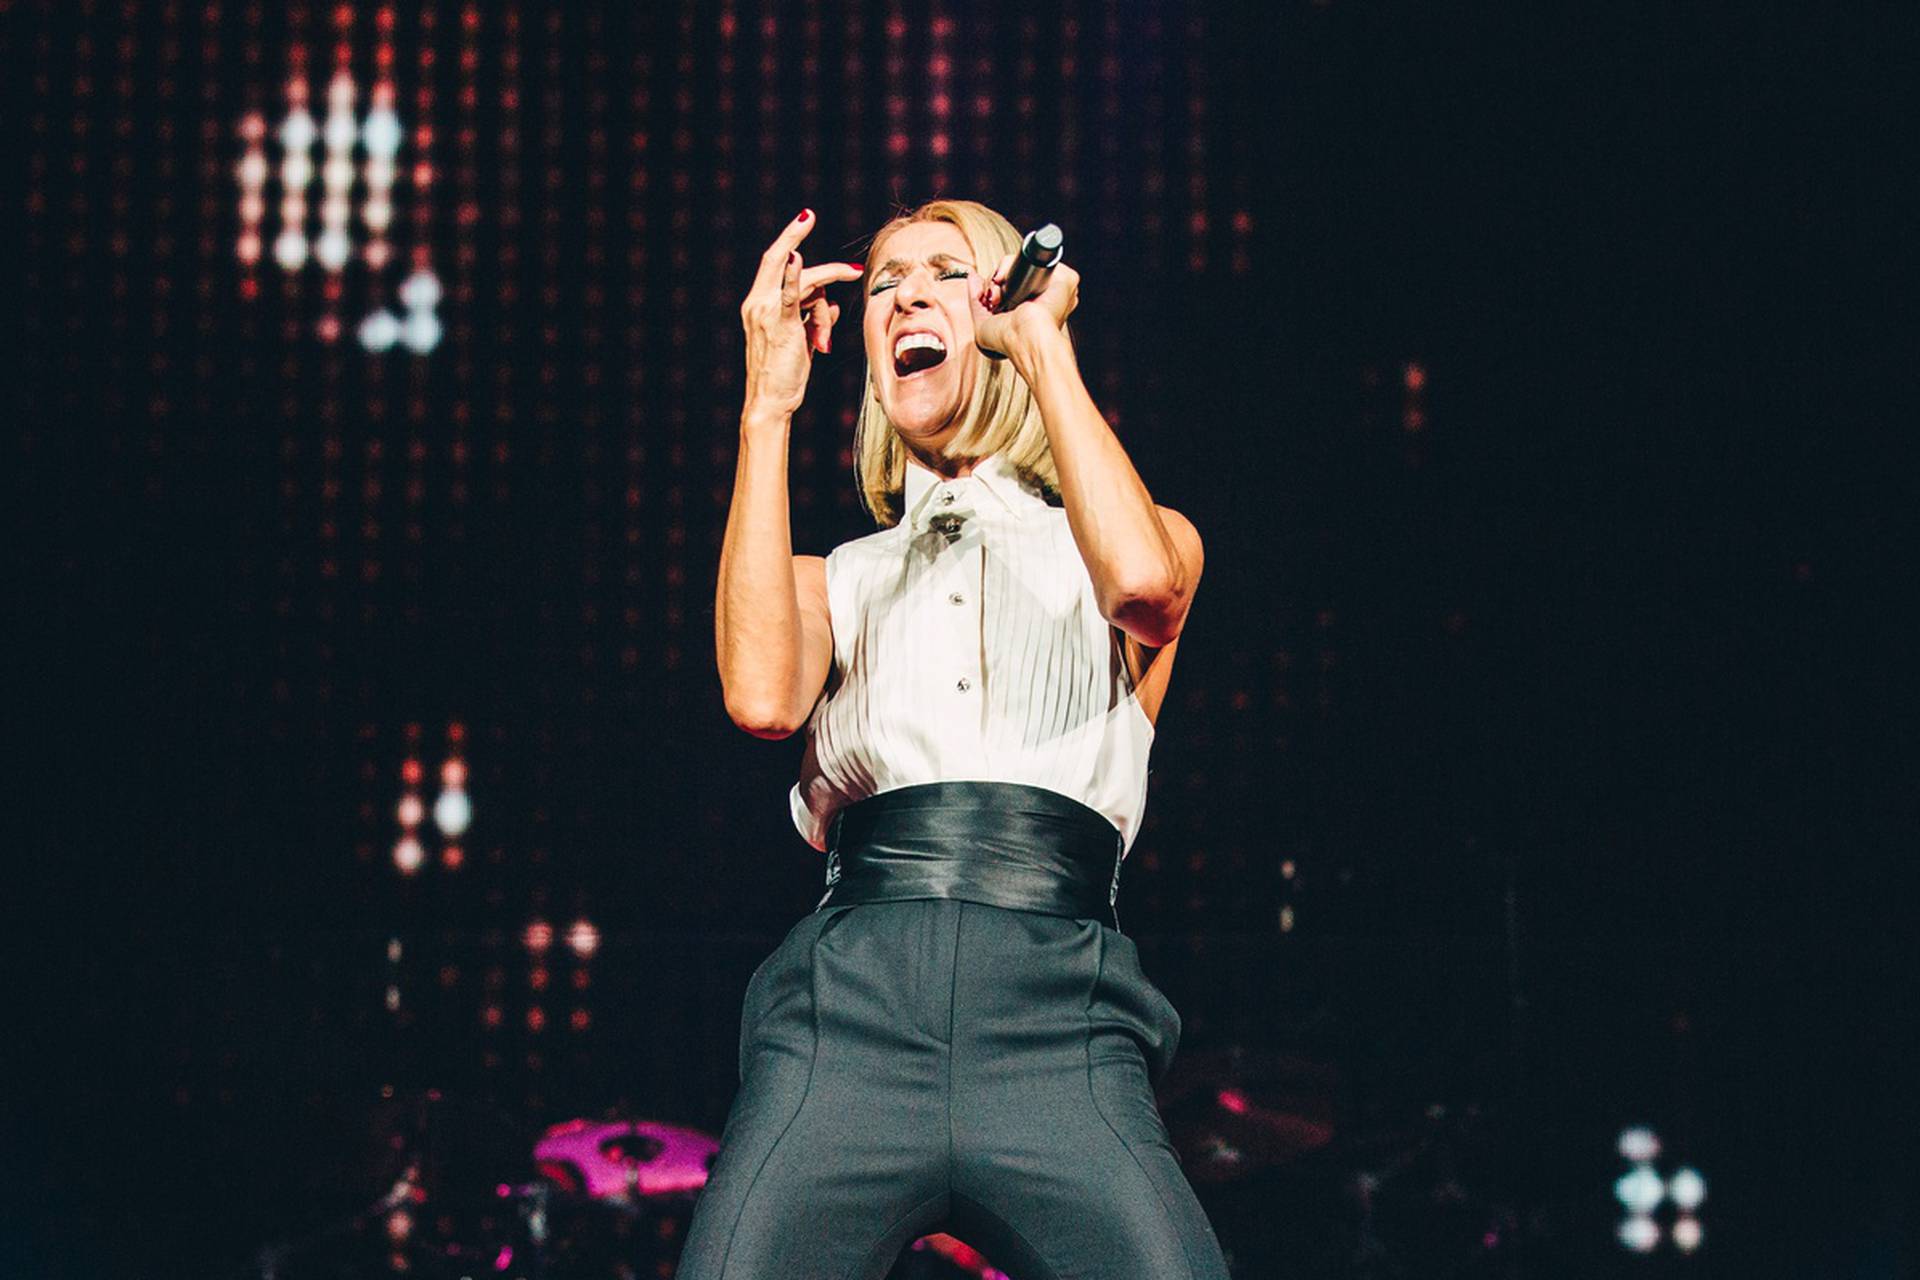 Celine Dion ima neizlječivu bolest, odgodila koncert u Zagrebu: 'Nisam još spremna'